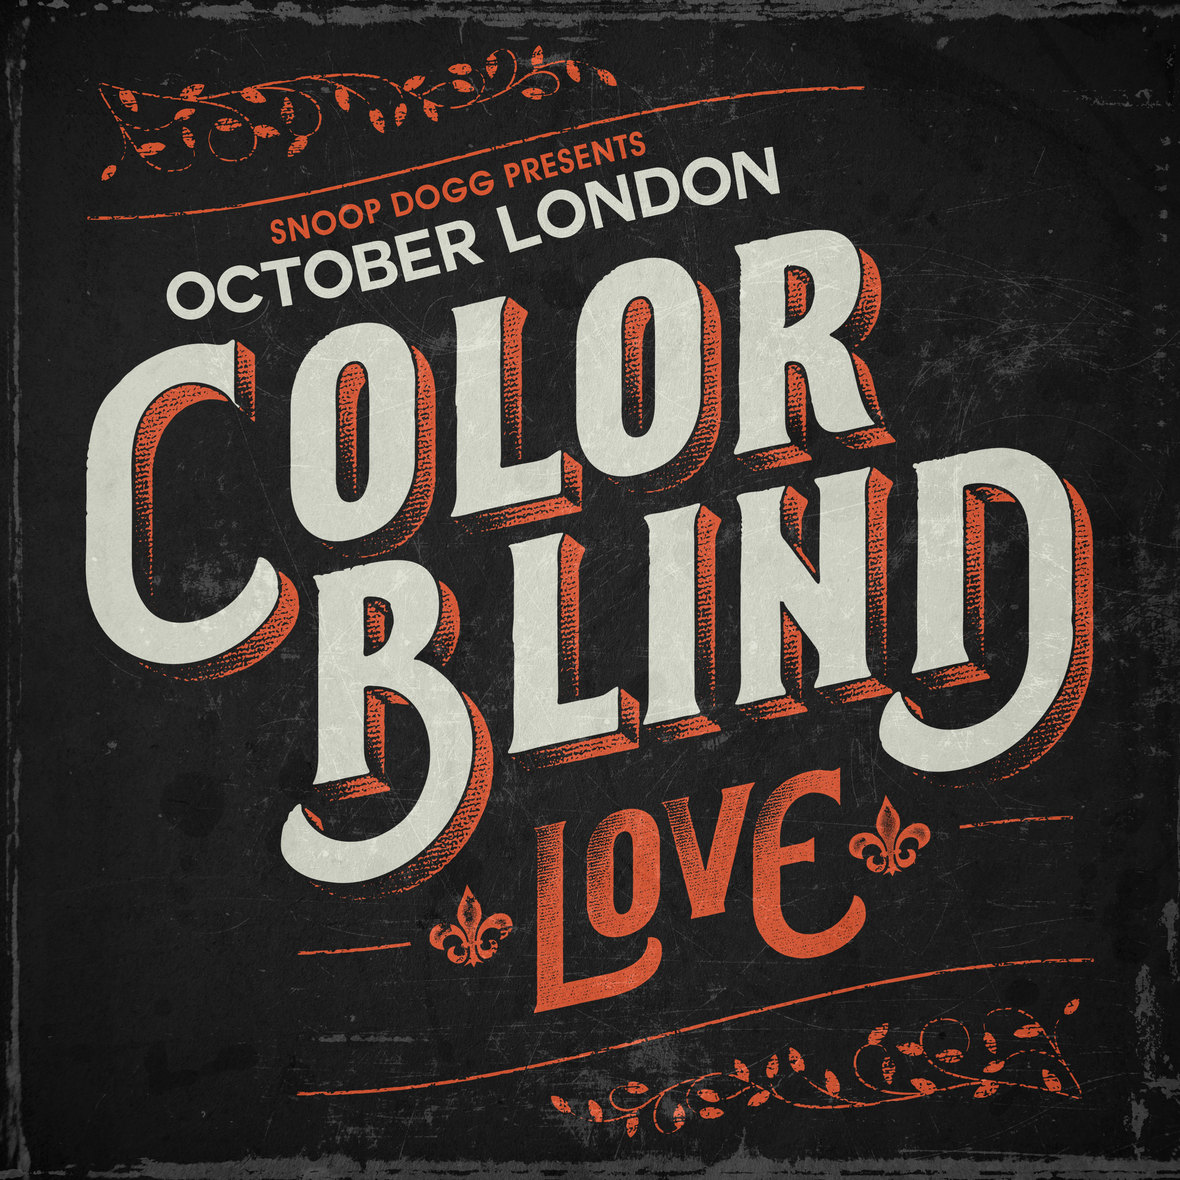 Snoop Dogg & Protege October London Release “Color Blind: Love” Short Film